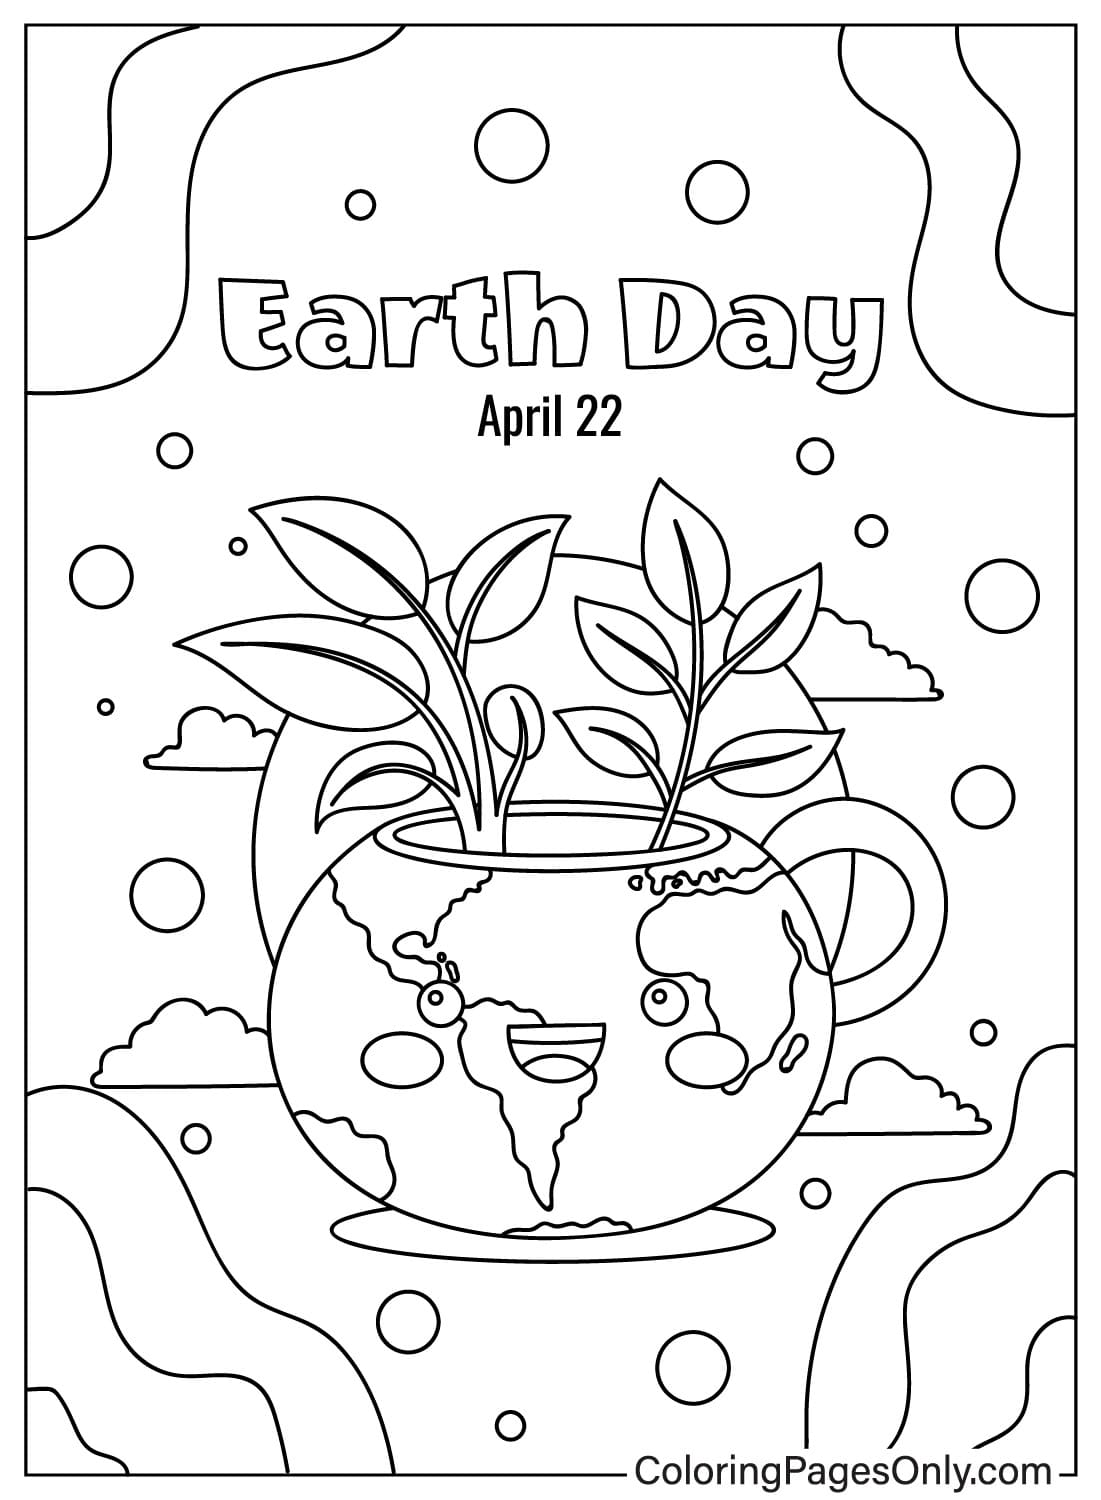 Раскраска День Земли JPG из Дня Земли